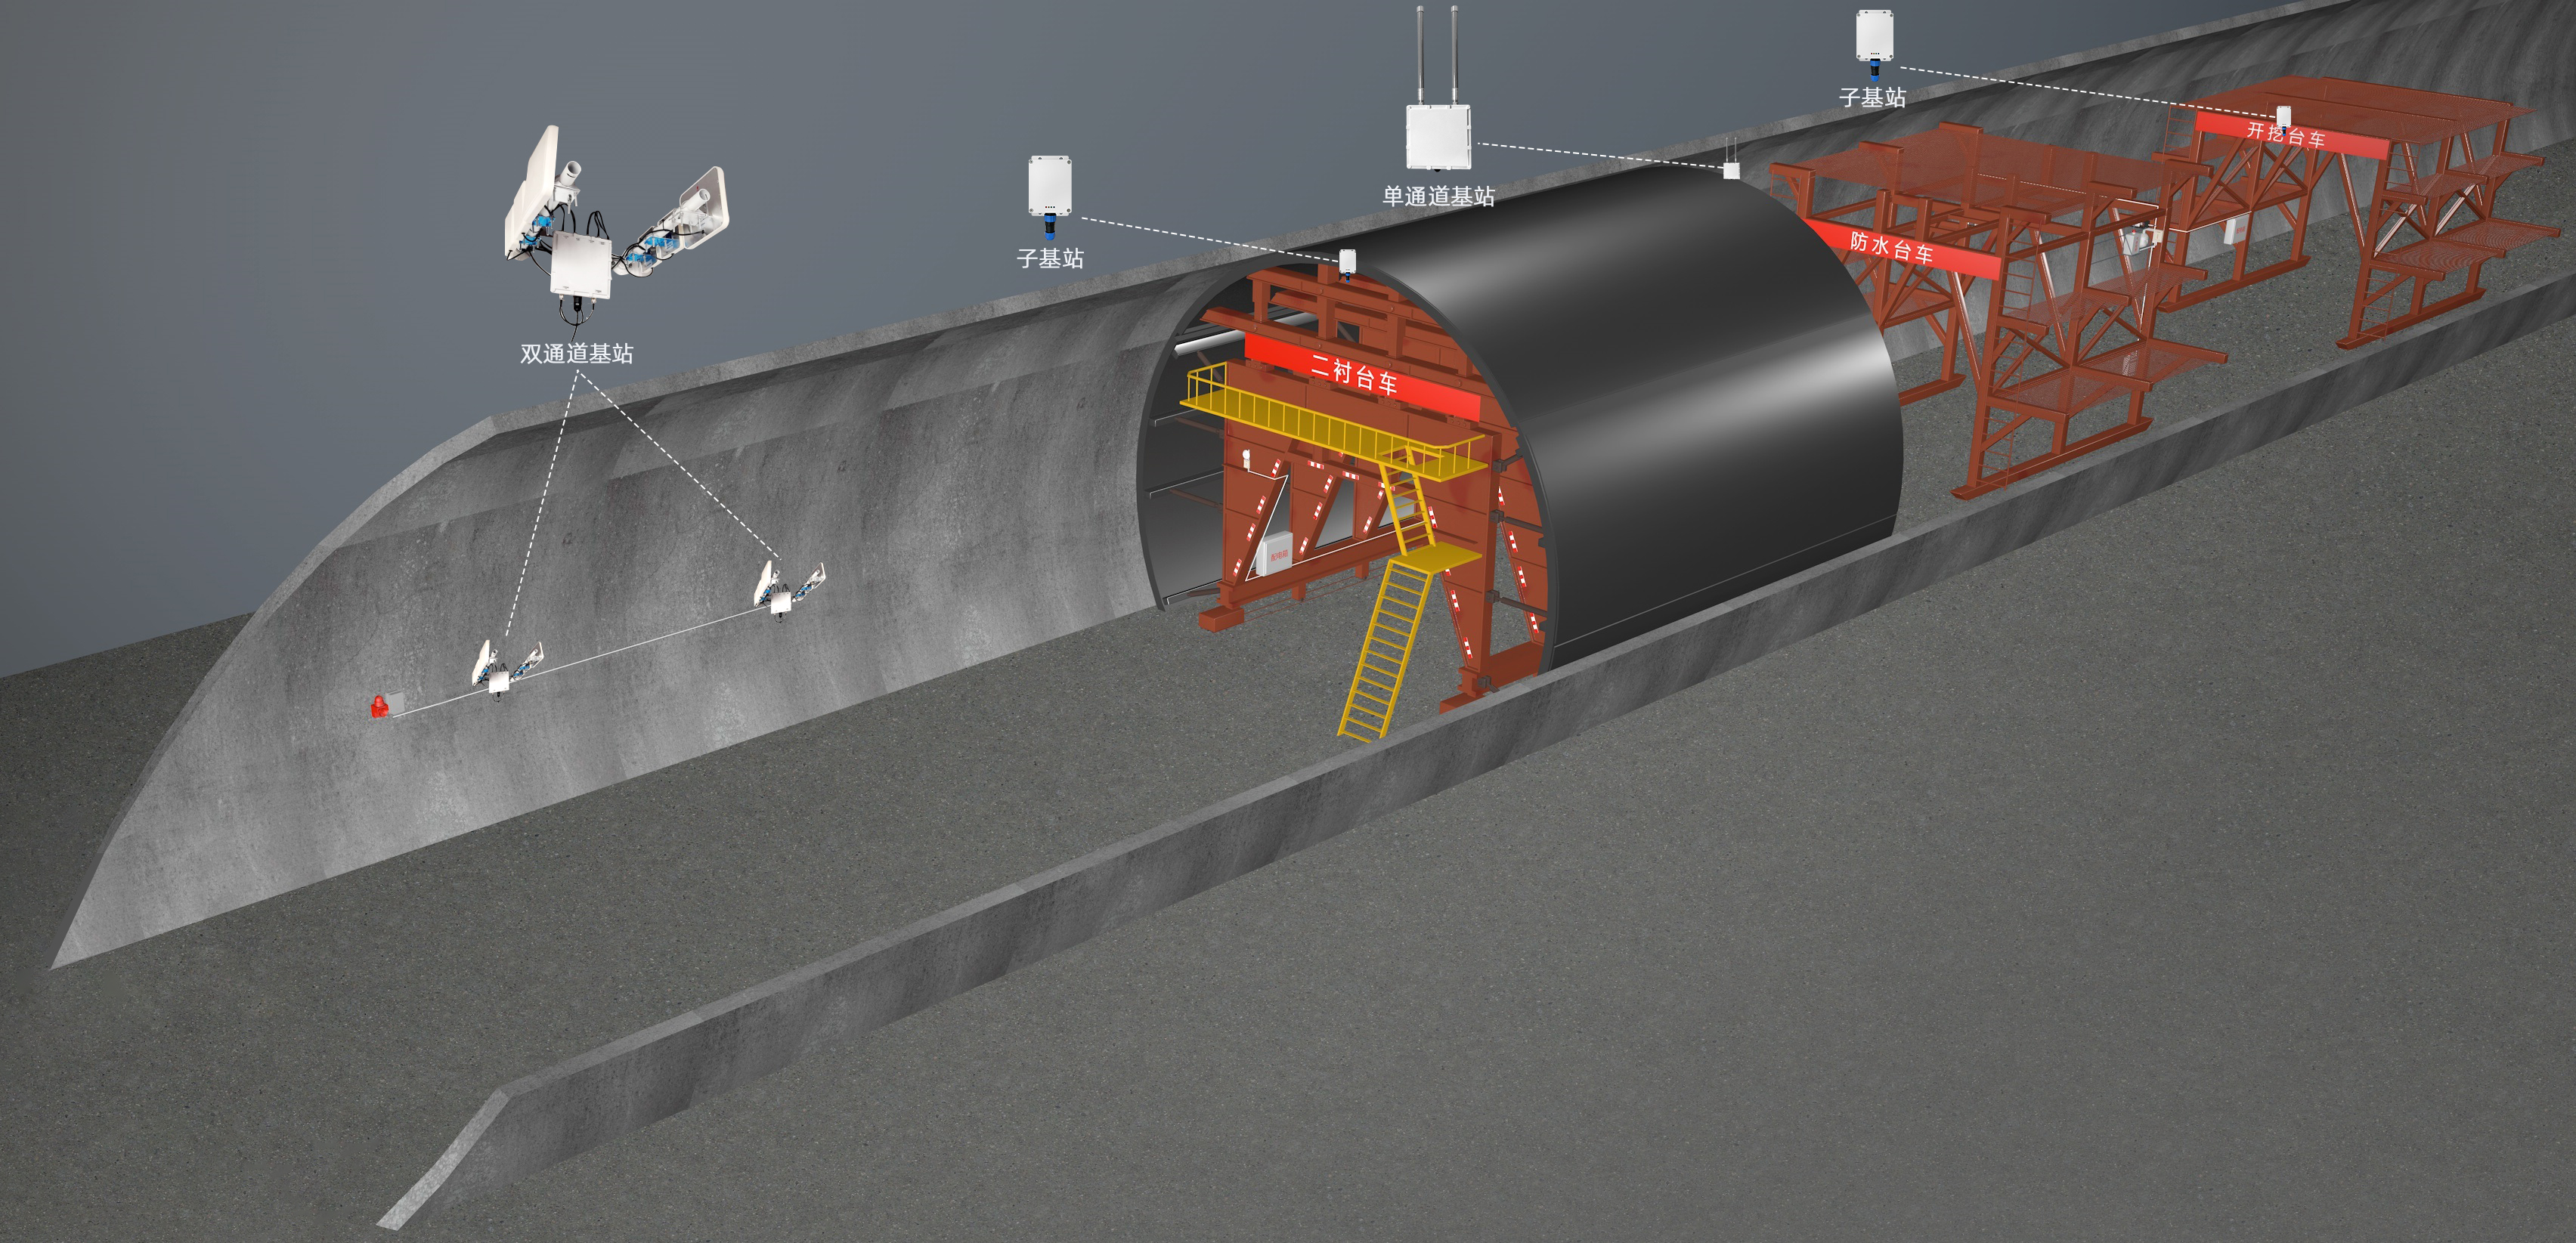 隧道人员定位系统中UWB、Zigbee和RFID技术在的应用剖析